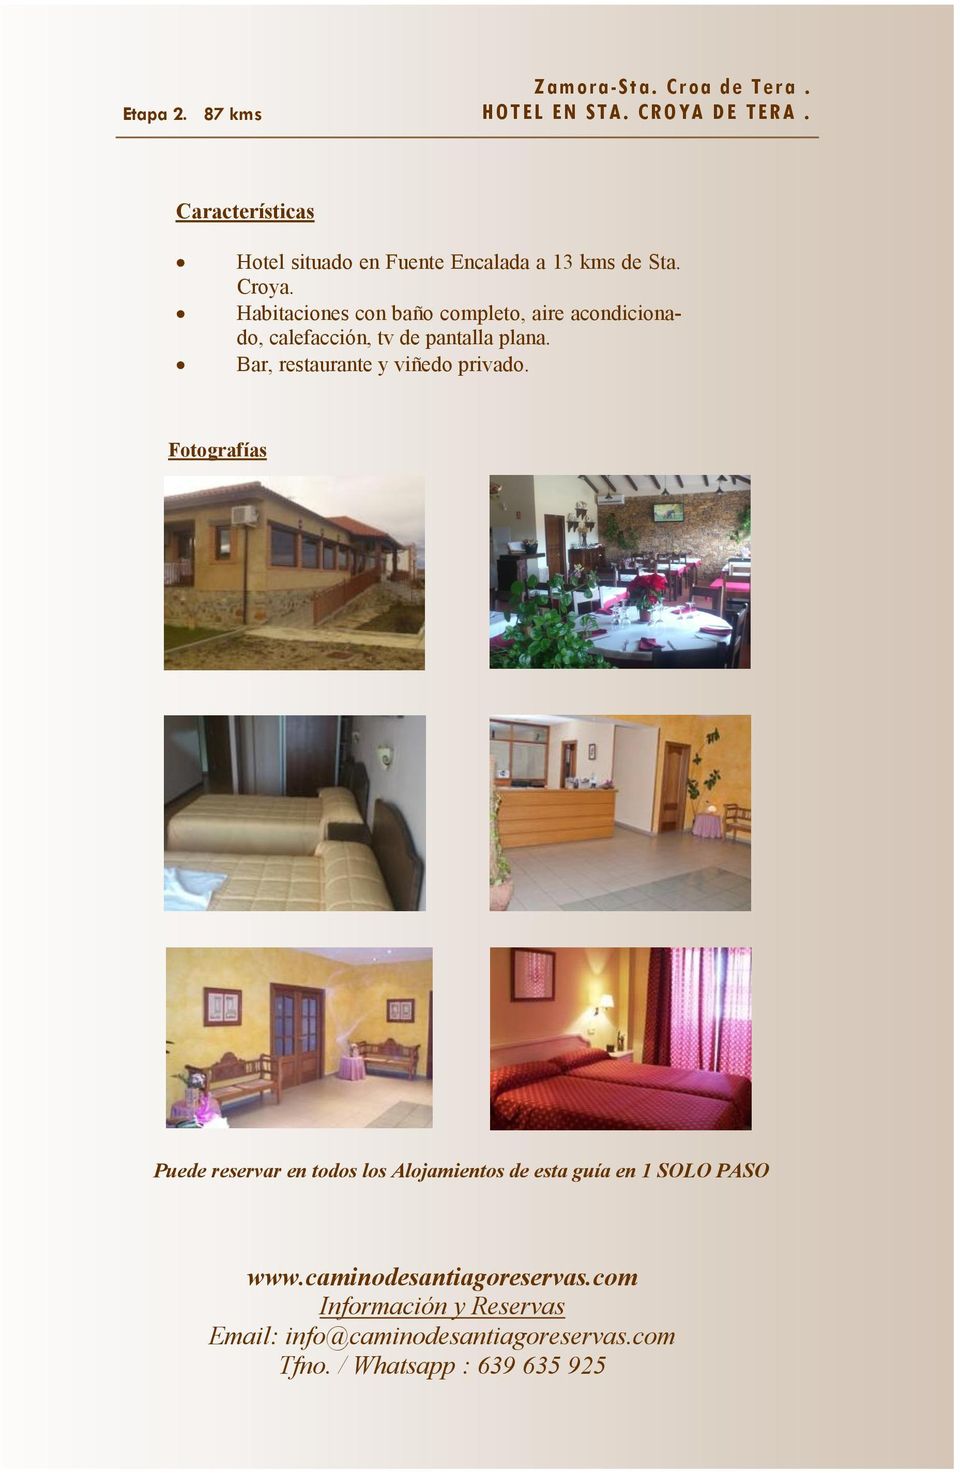 Hotel situado en Fuente Encalada a 13 kms de Sta. Croya.